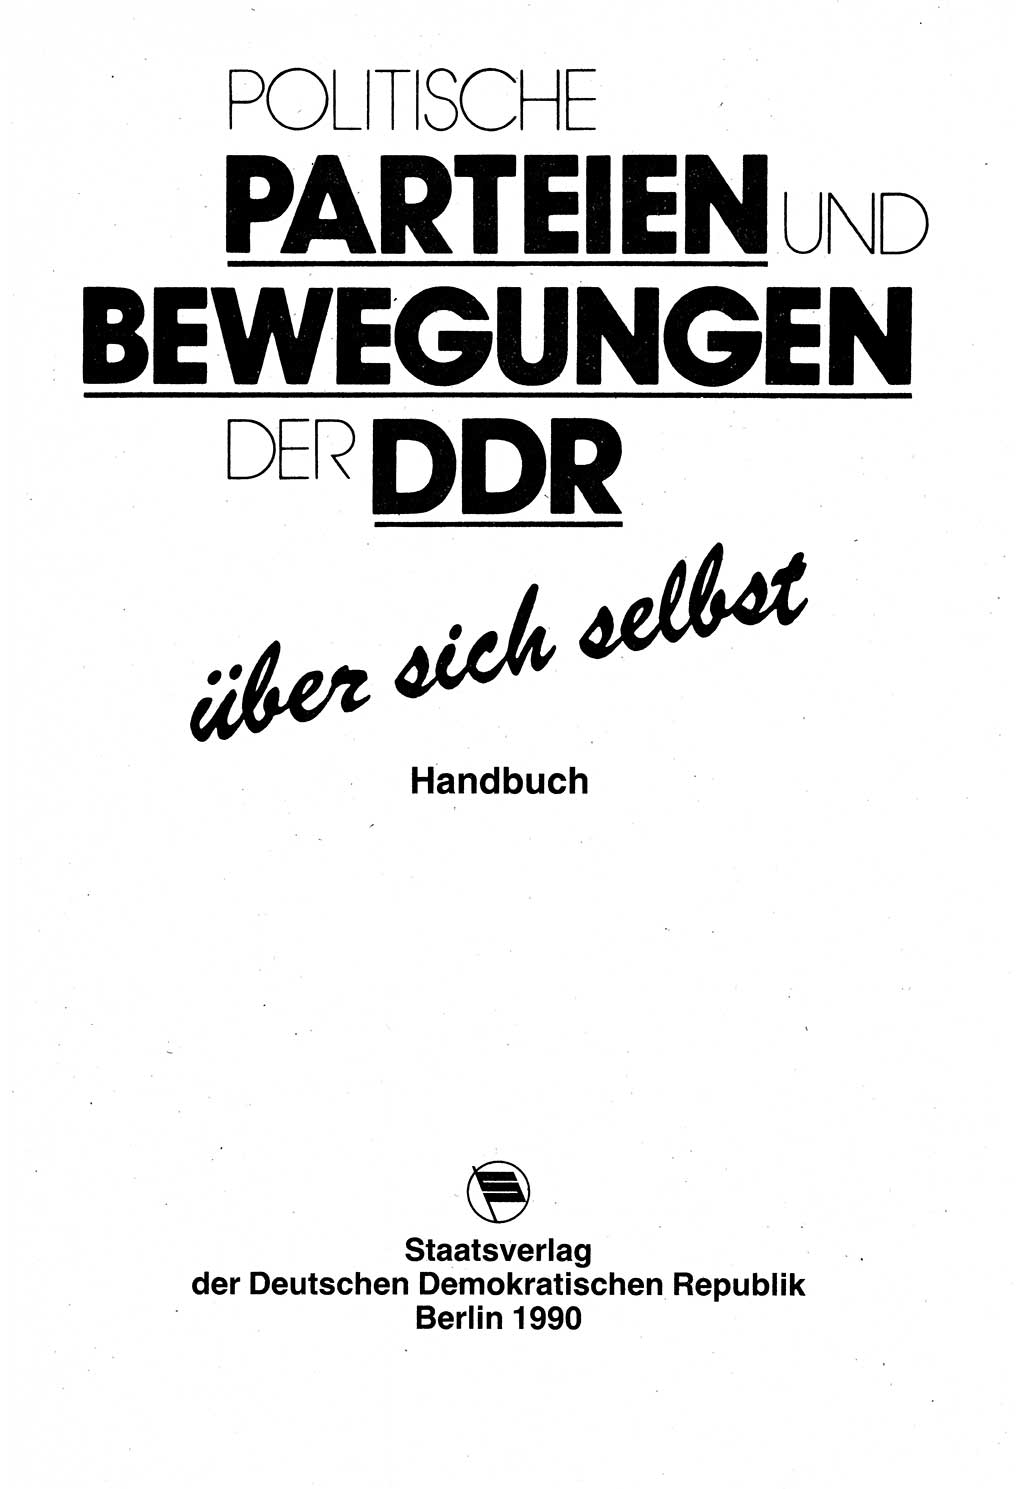 Politische Parteien und Bewegungen der DDR (Deutsche Demokratische Republik) über sich selbst 1990, Seite 3 (Pol. Part. Bew. DDR 1990, S. 3)